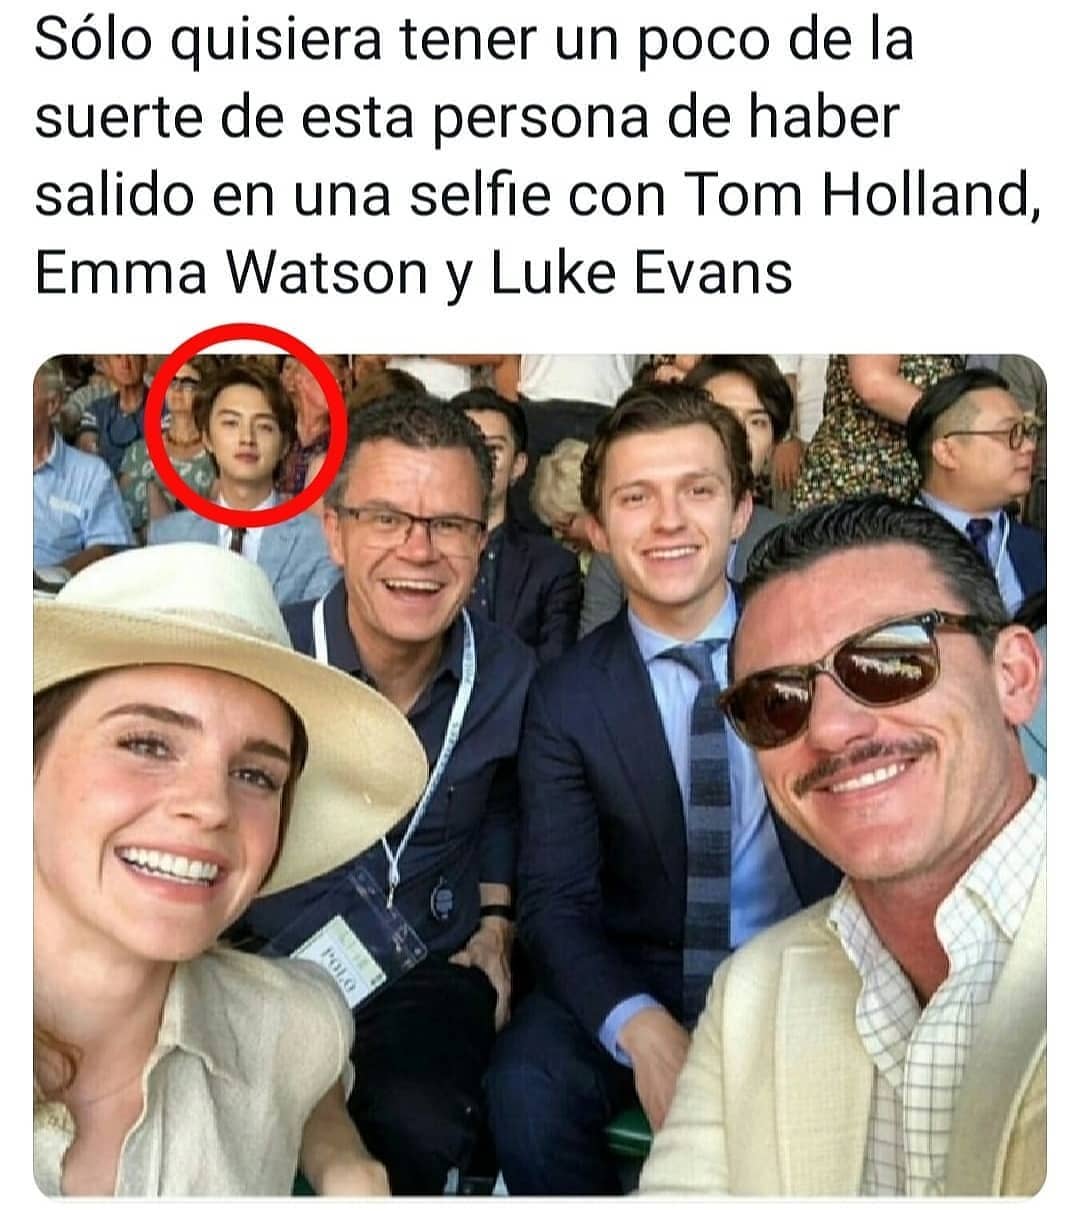 Sólo quisiera tener un poco de la suerte de esta persona de haber salido en una selfie con Tom Holland, Emma Watson y Luke Evans.